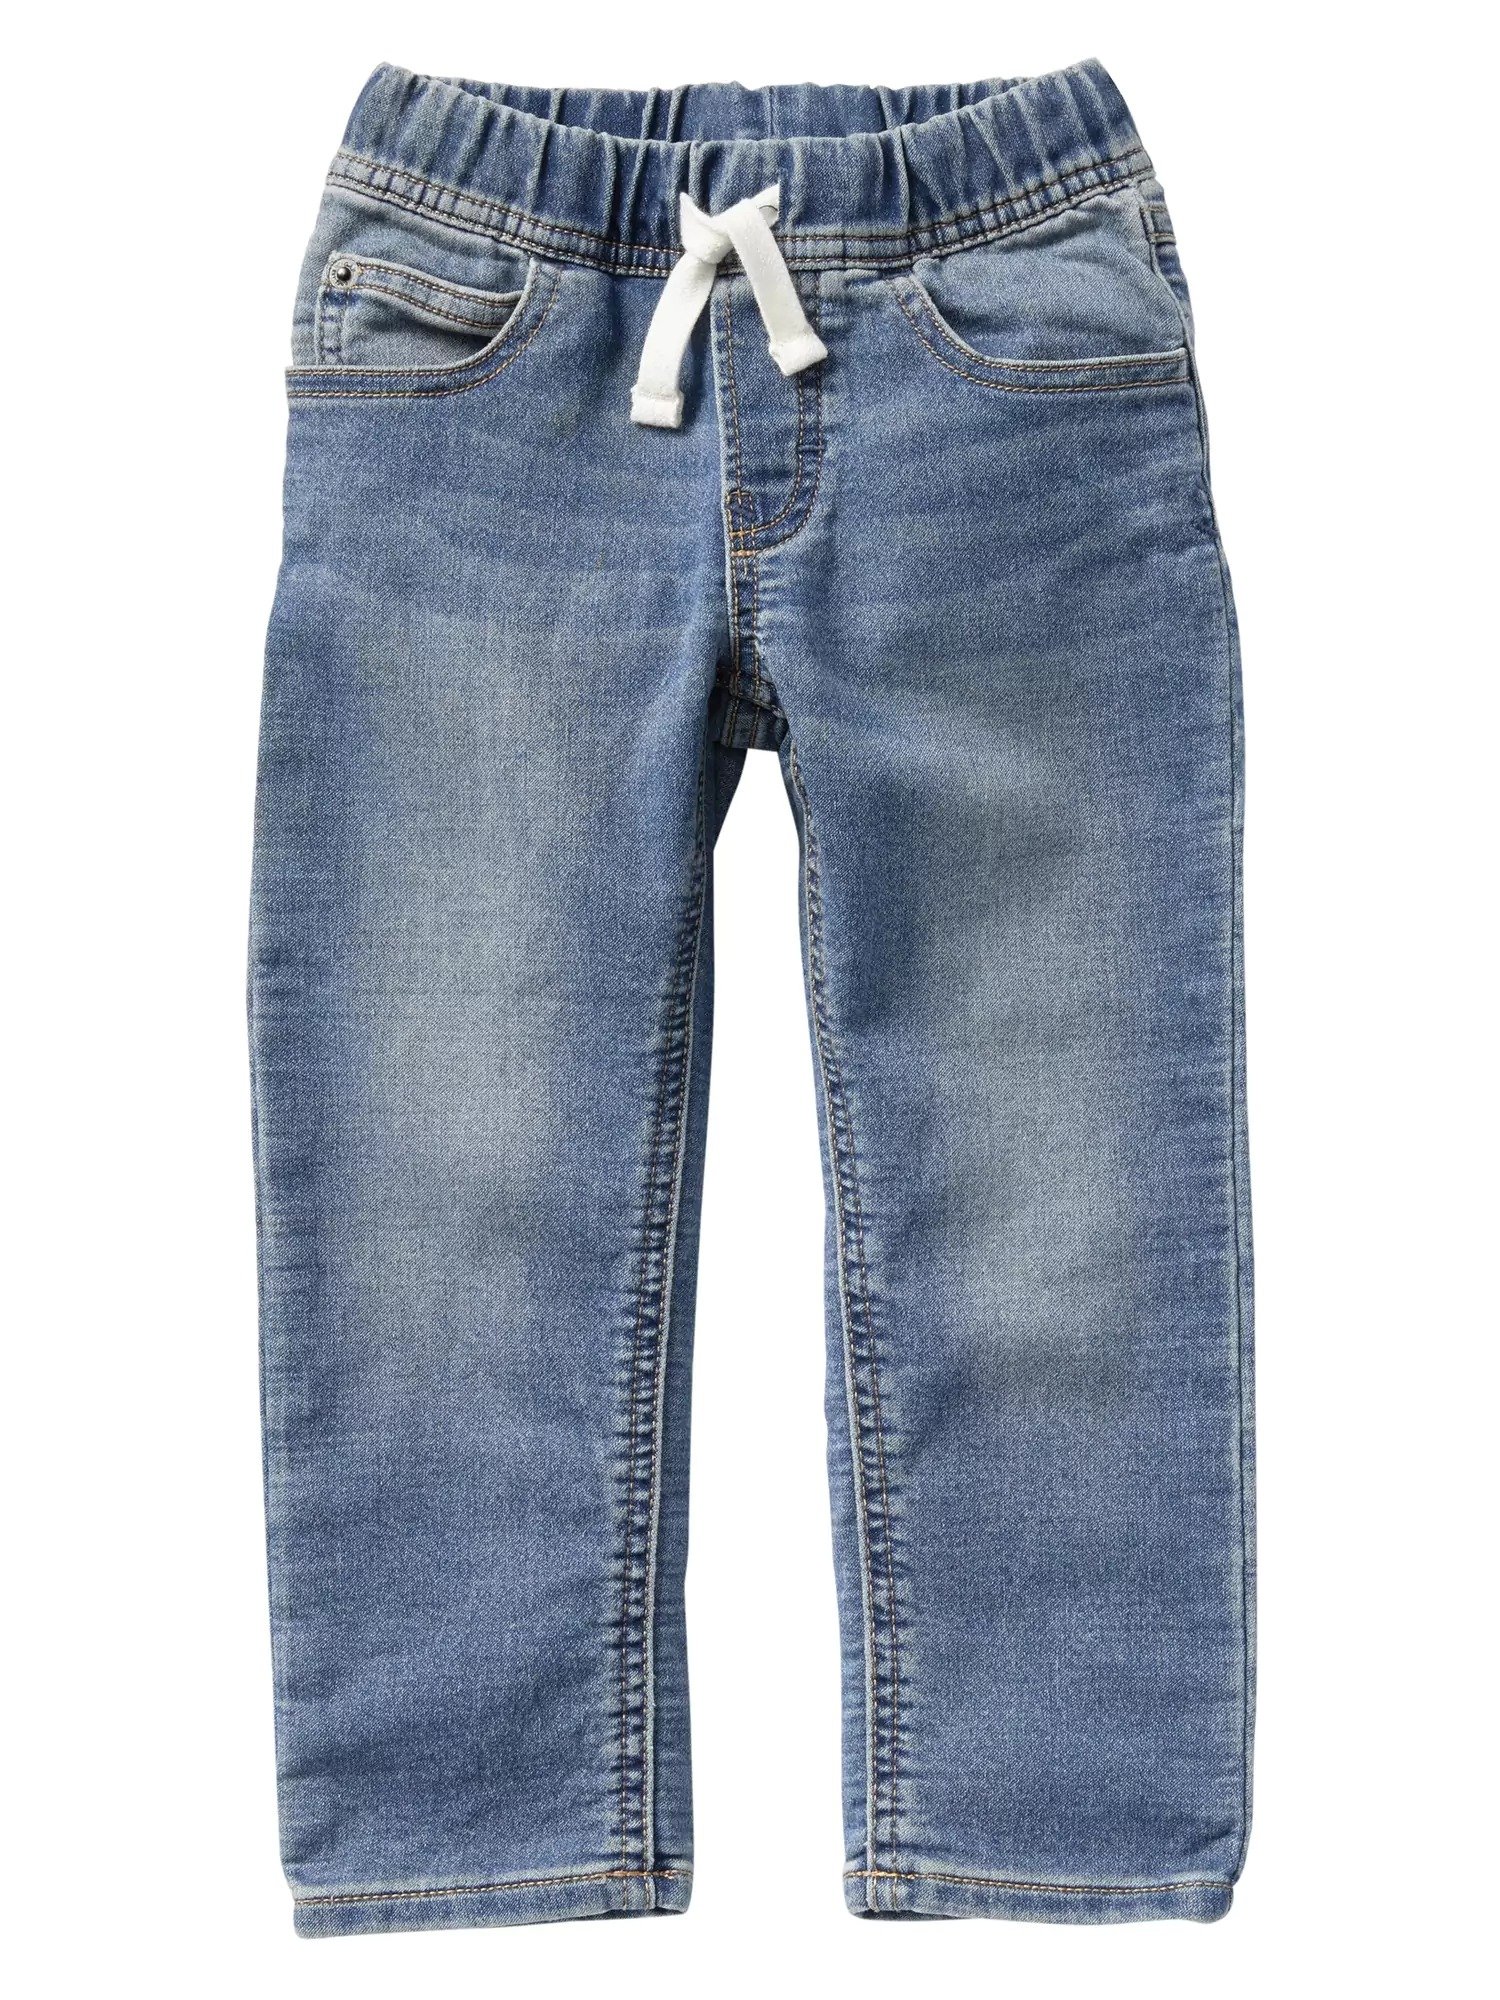 Açık yıkamalı slim jean pantolon product image